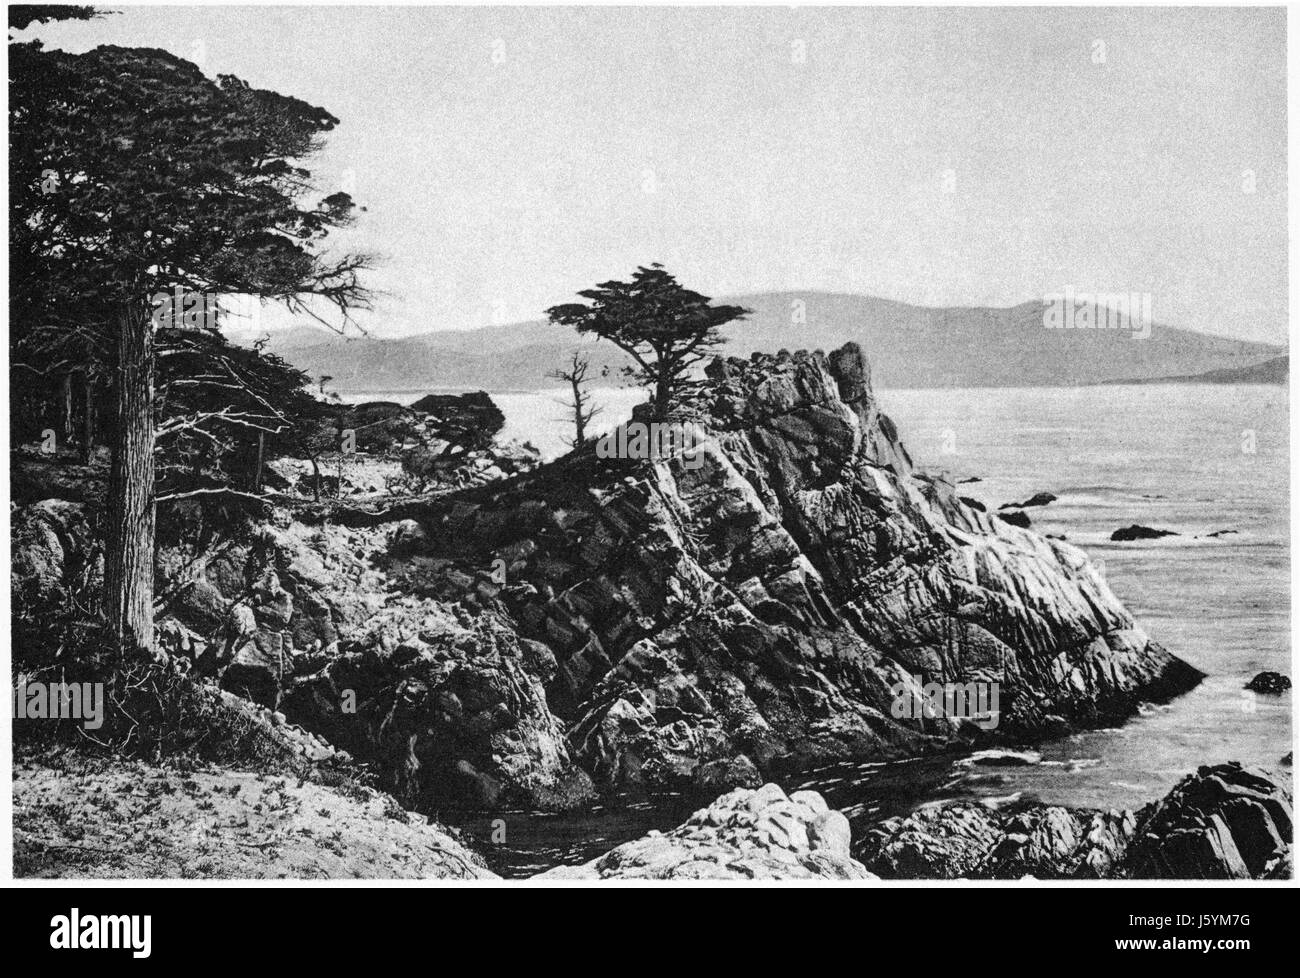 Punkt in der Mitte, 18 Mile Drive, Monterey, USA, Kalifornien, Photogravure, Denison News Co., 1903 Stockfoto